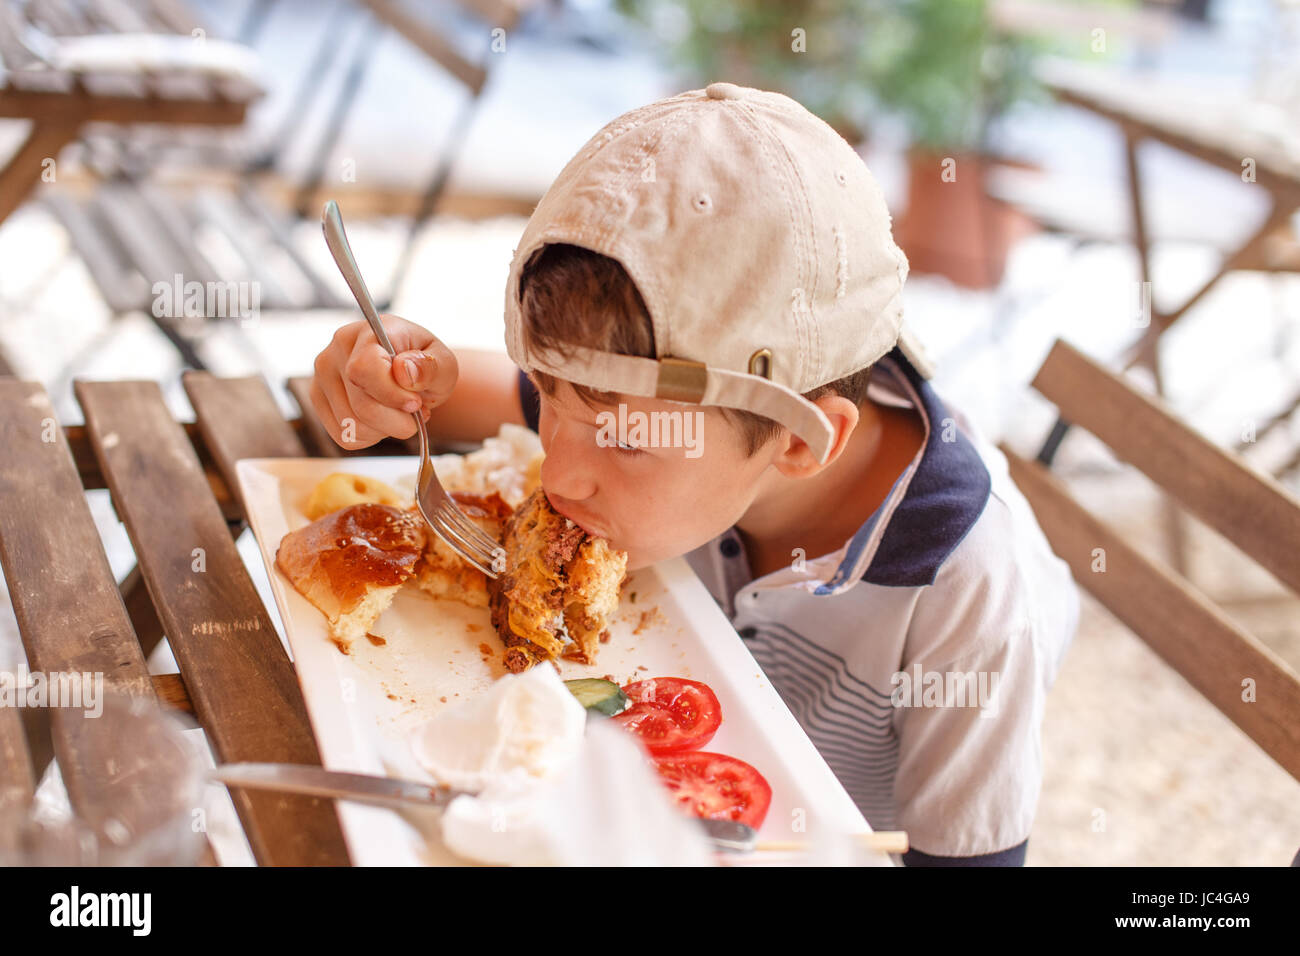 Kleine böse Junge Essen Junk Food im Restaurant unter freiem Himmel Stockfoto